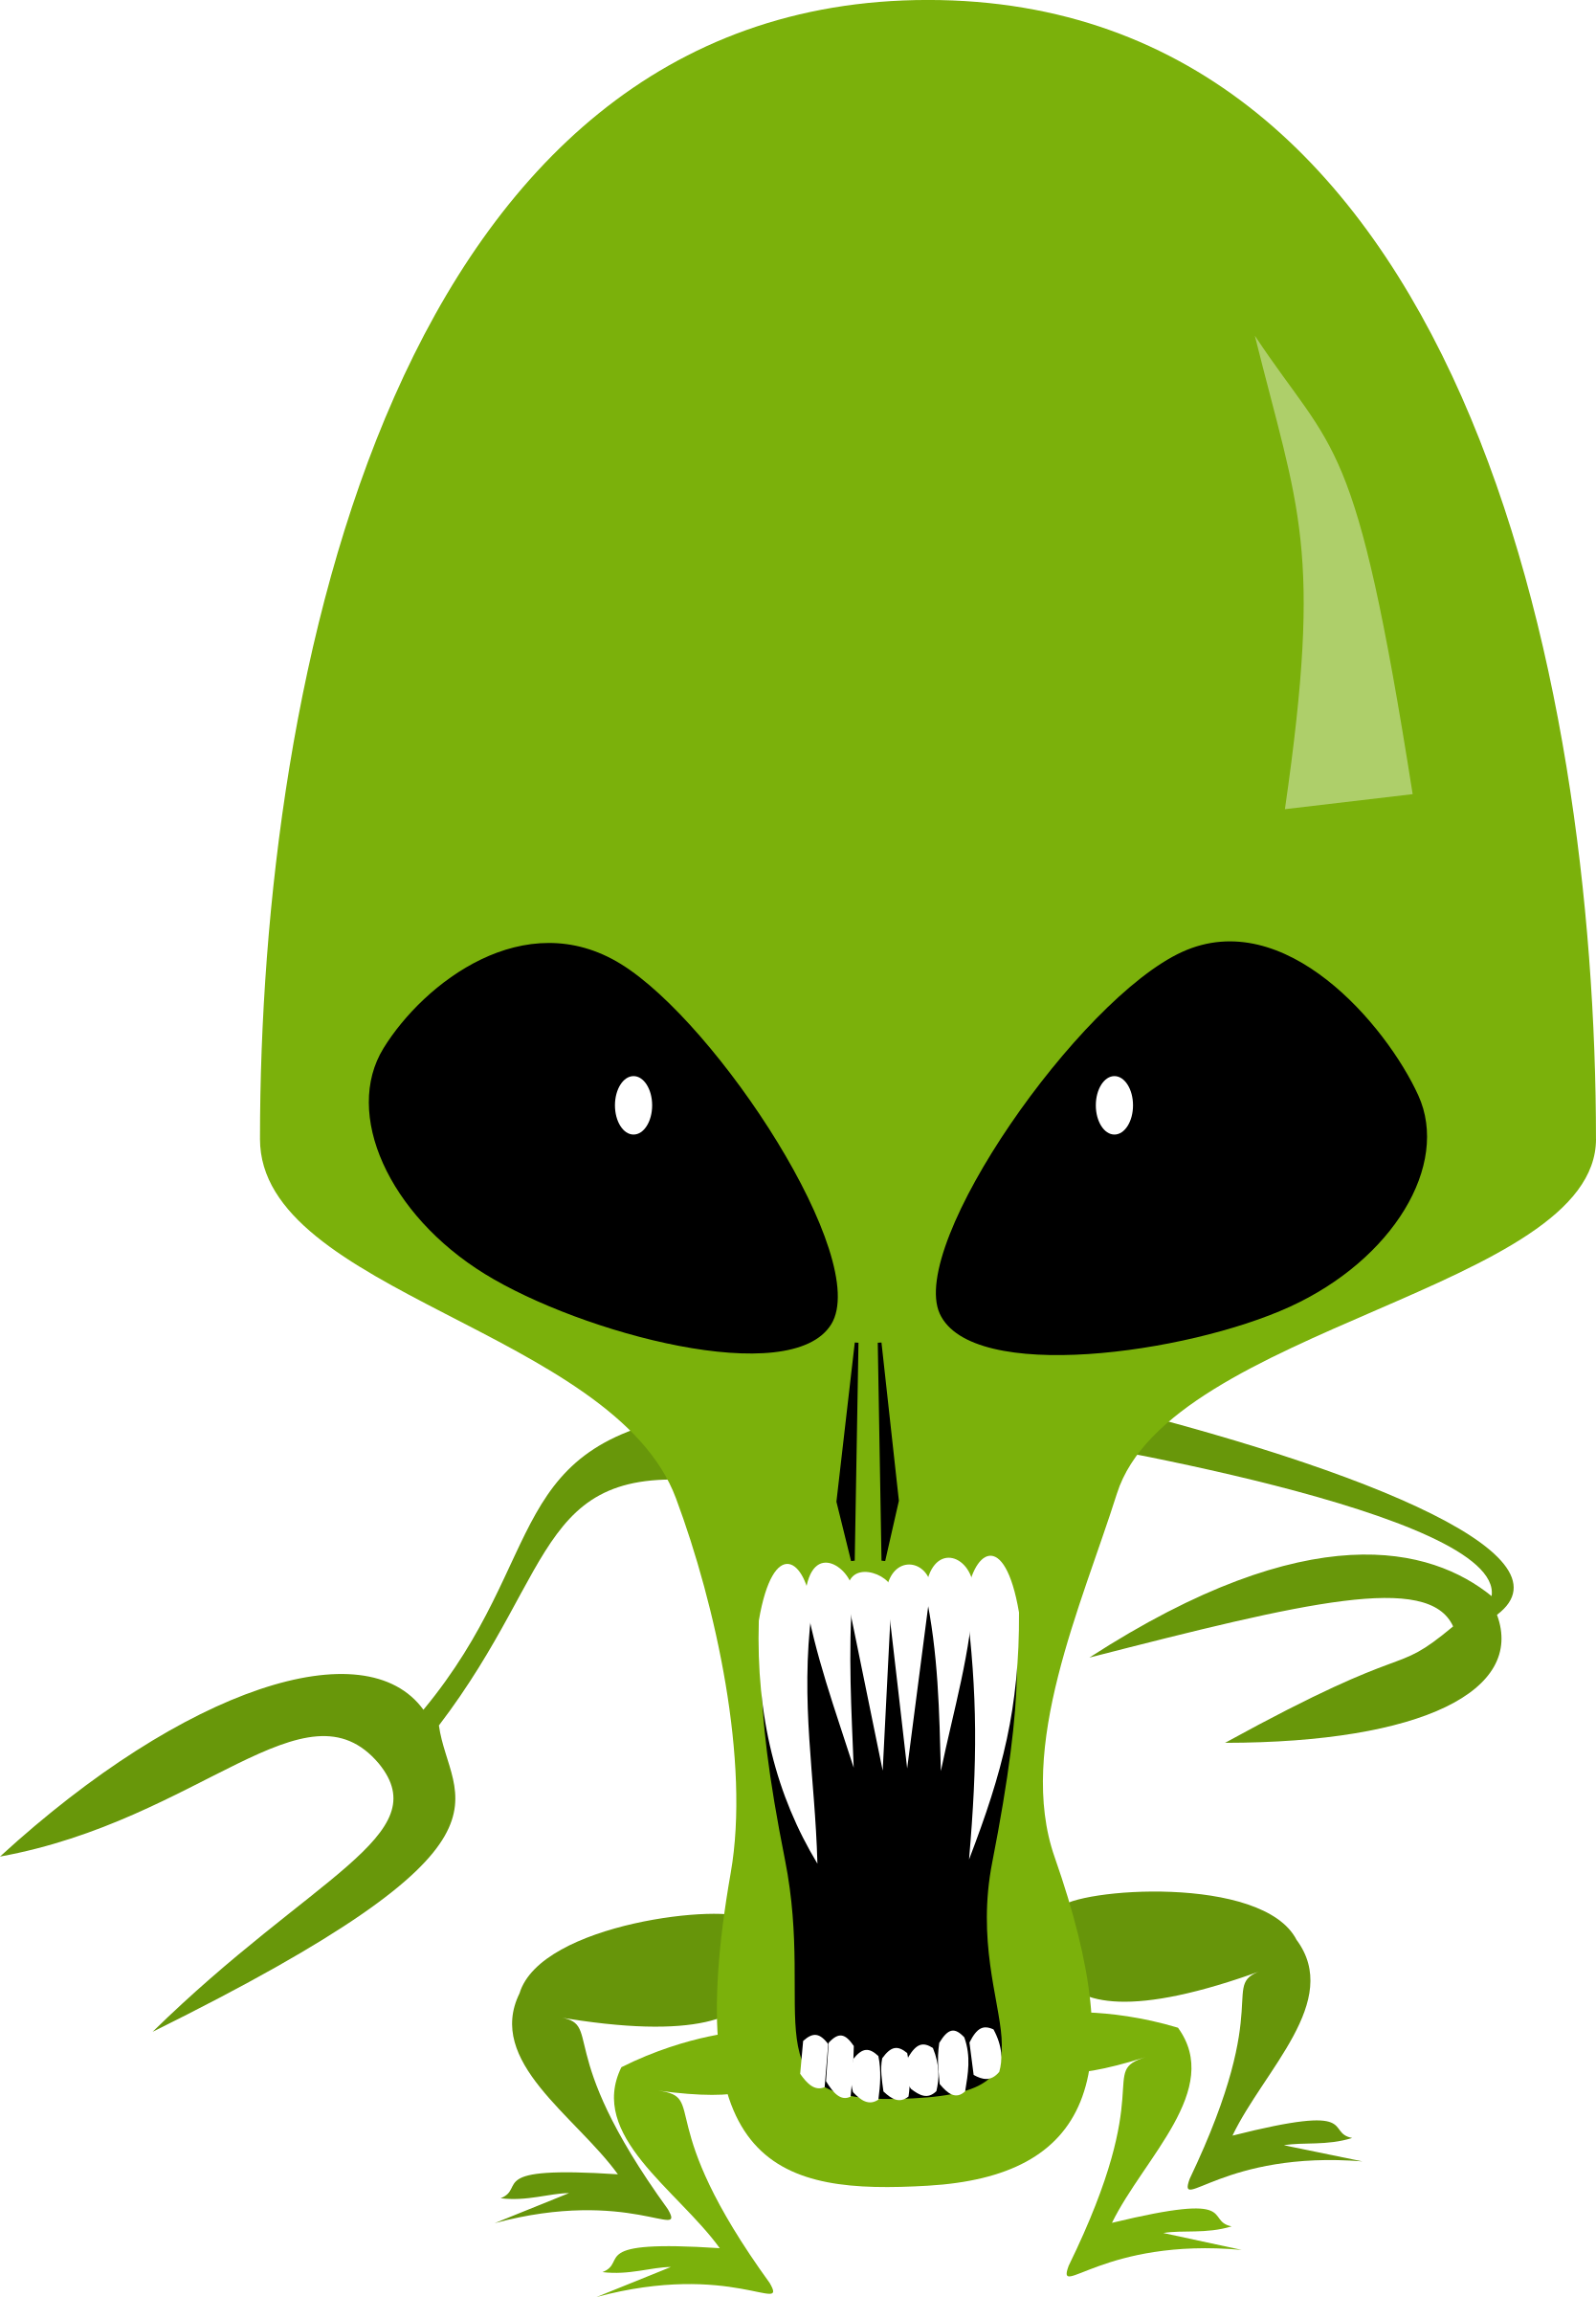 Cartoon Alien PNG Image, Cartoon Aliens, Alien Clipart, Cartoon Vector,  Cartoon PNG Image For Free Download